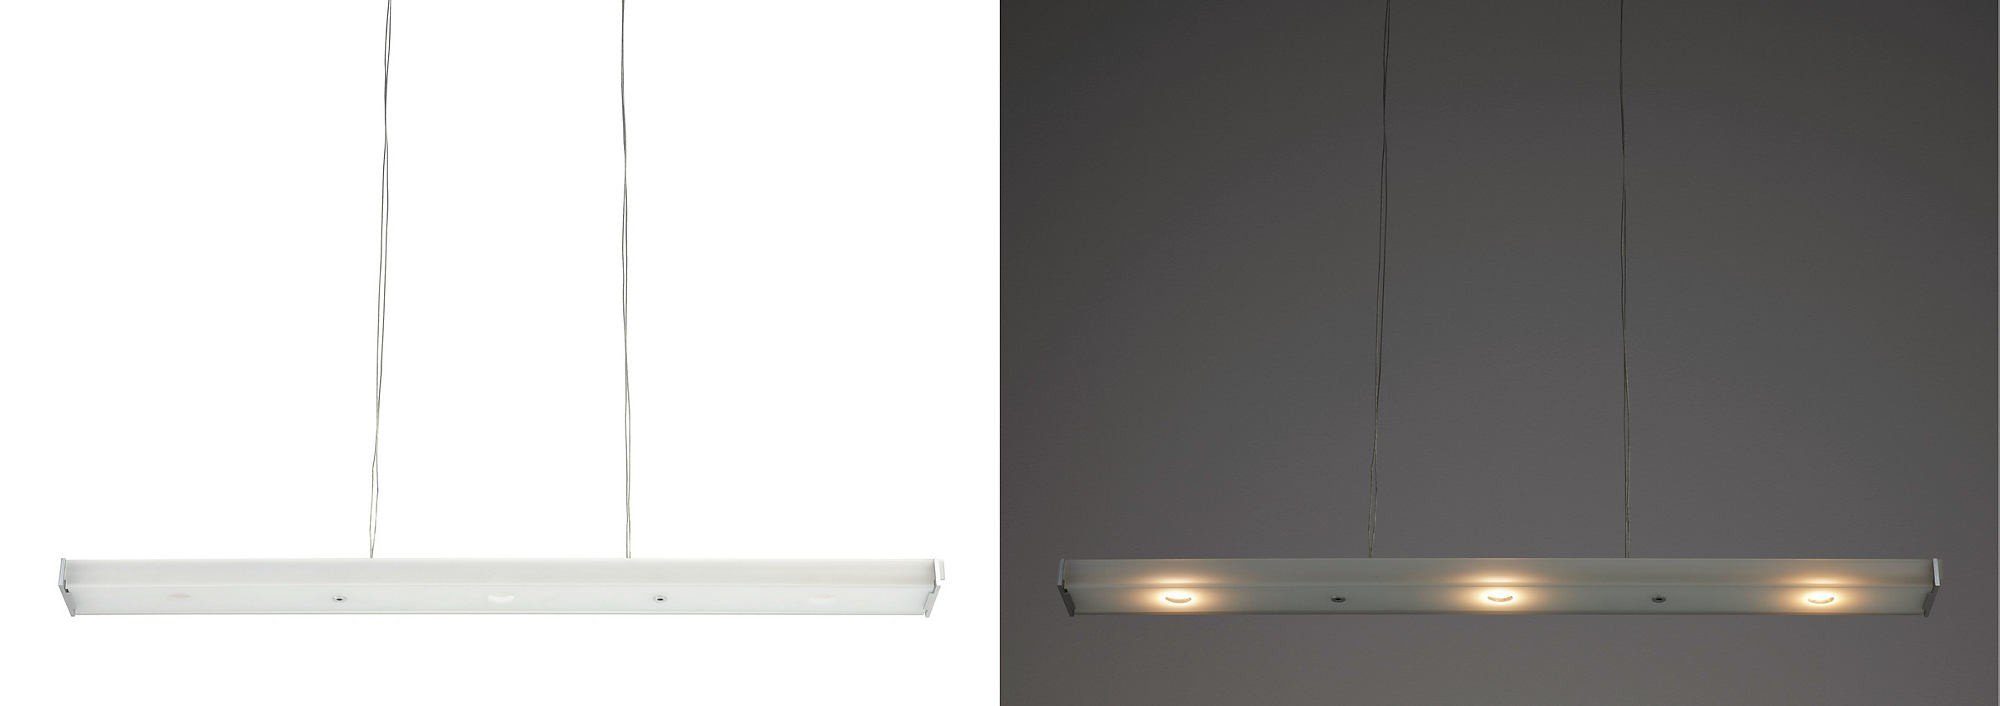 Ledino Glas Qualitaetsware24 wählbar Dimmbar, Aufbaustrahler LED Pendelleuchte LED Alu Lichtfarbe Philips LED